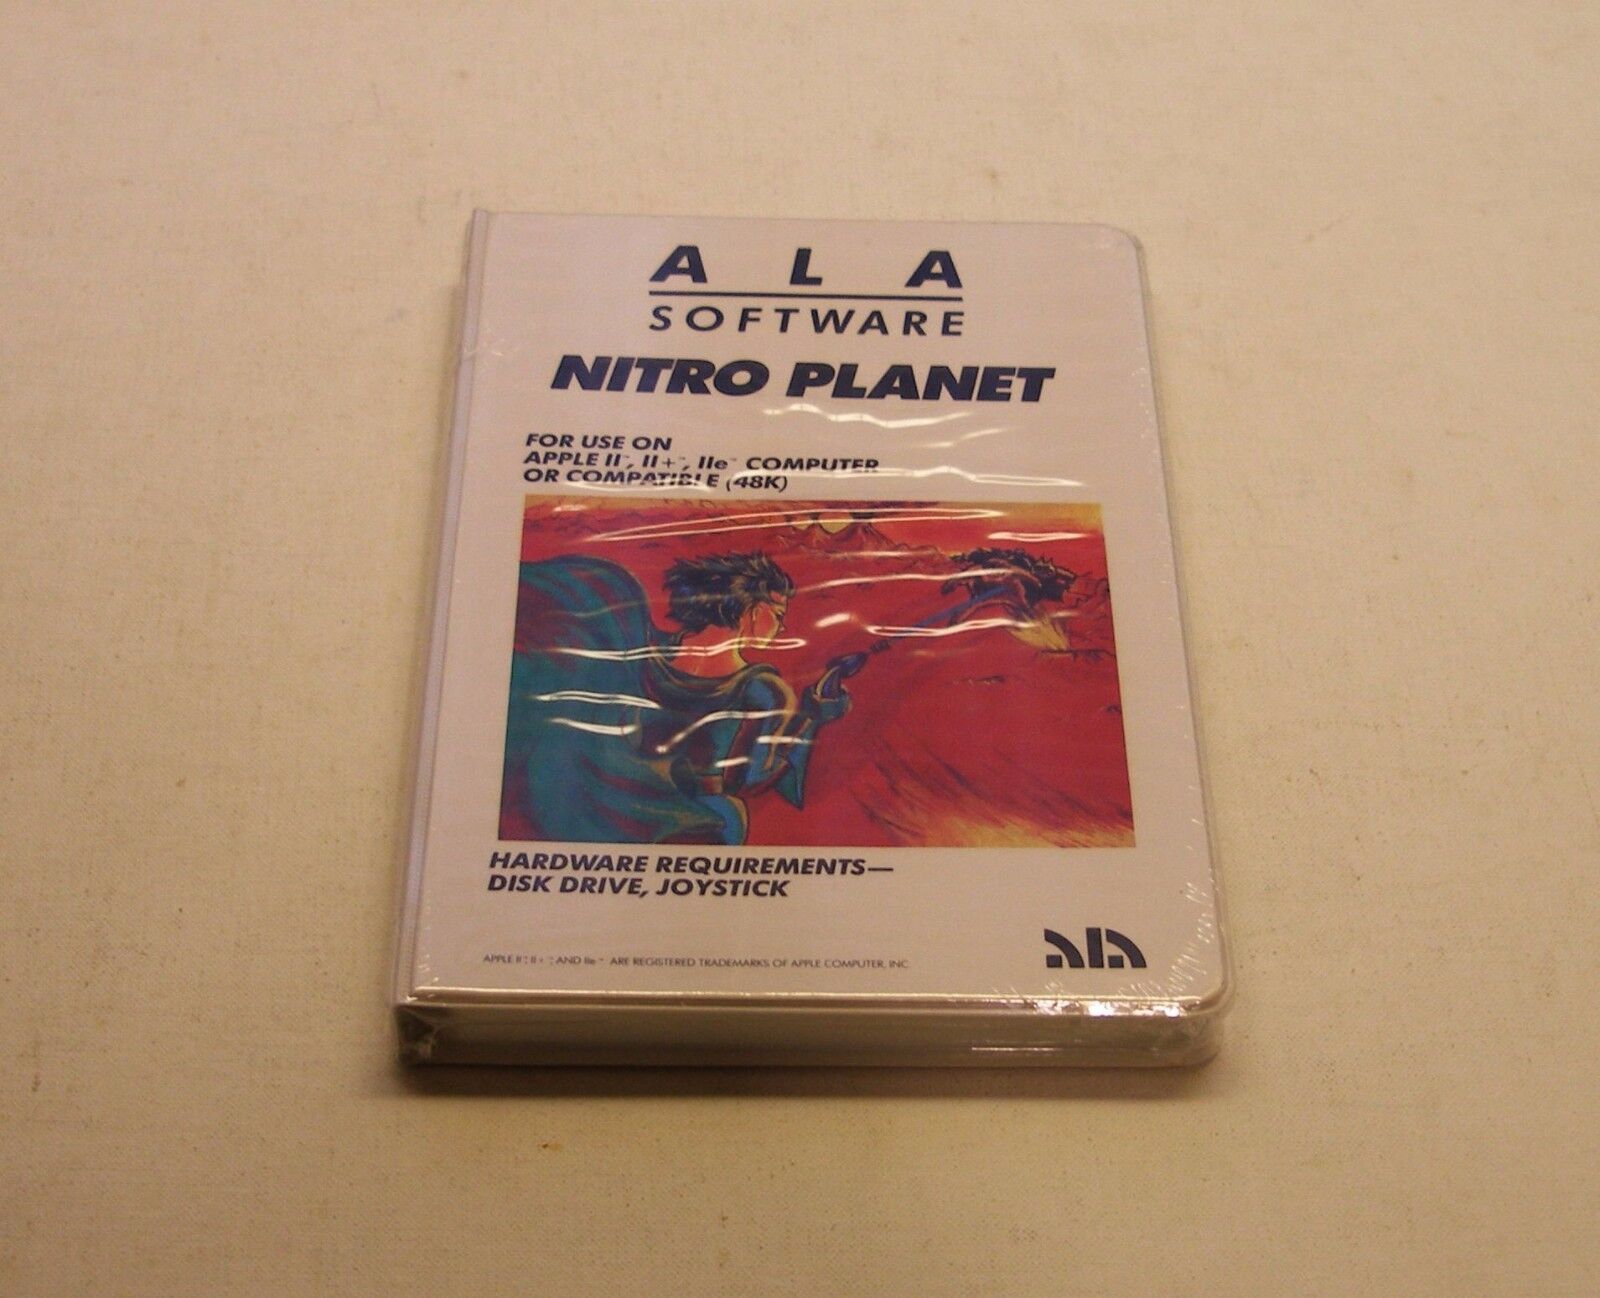 VERY RARE Nitro Planet by ALA Software for Apple II, II+, IIe, IIc, IIGS - NEW